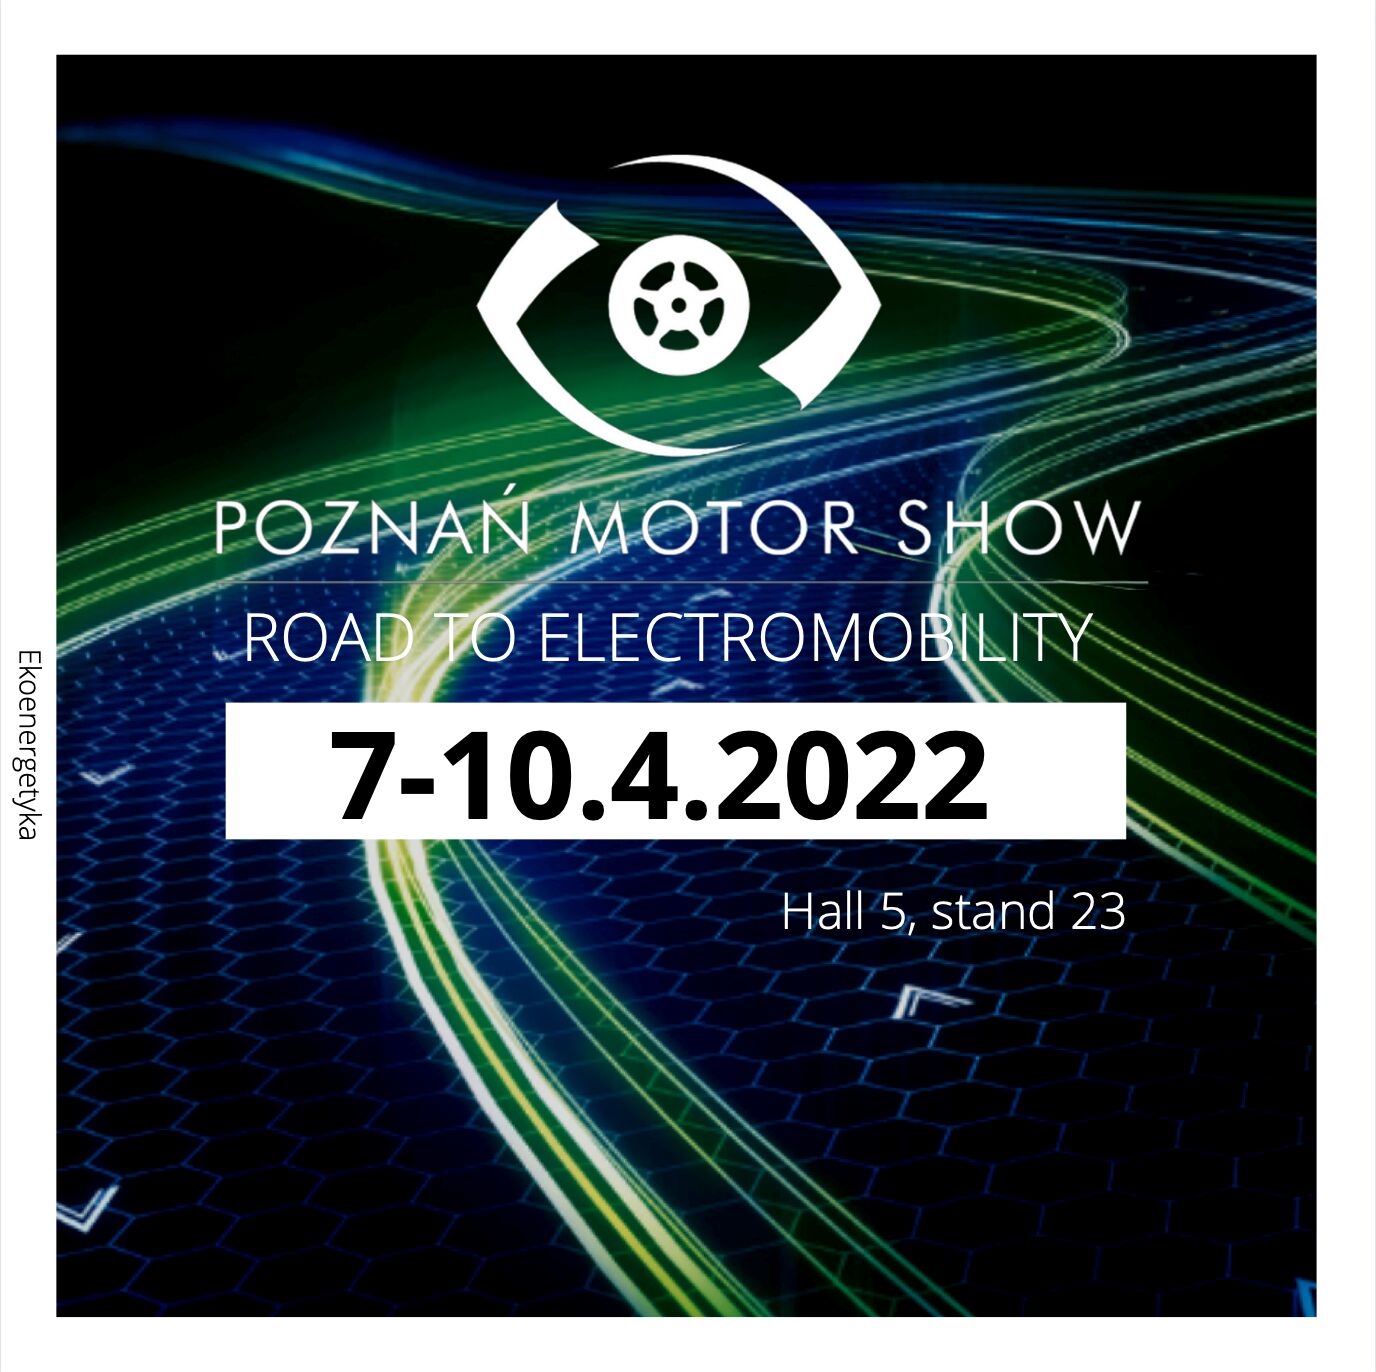 ekoenergetyka poznań motor show 2022, Ekoenergetyka